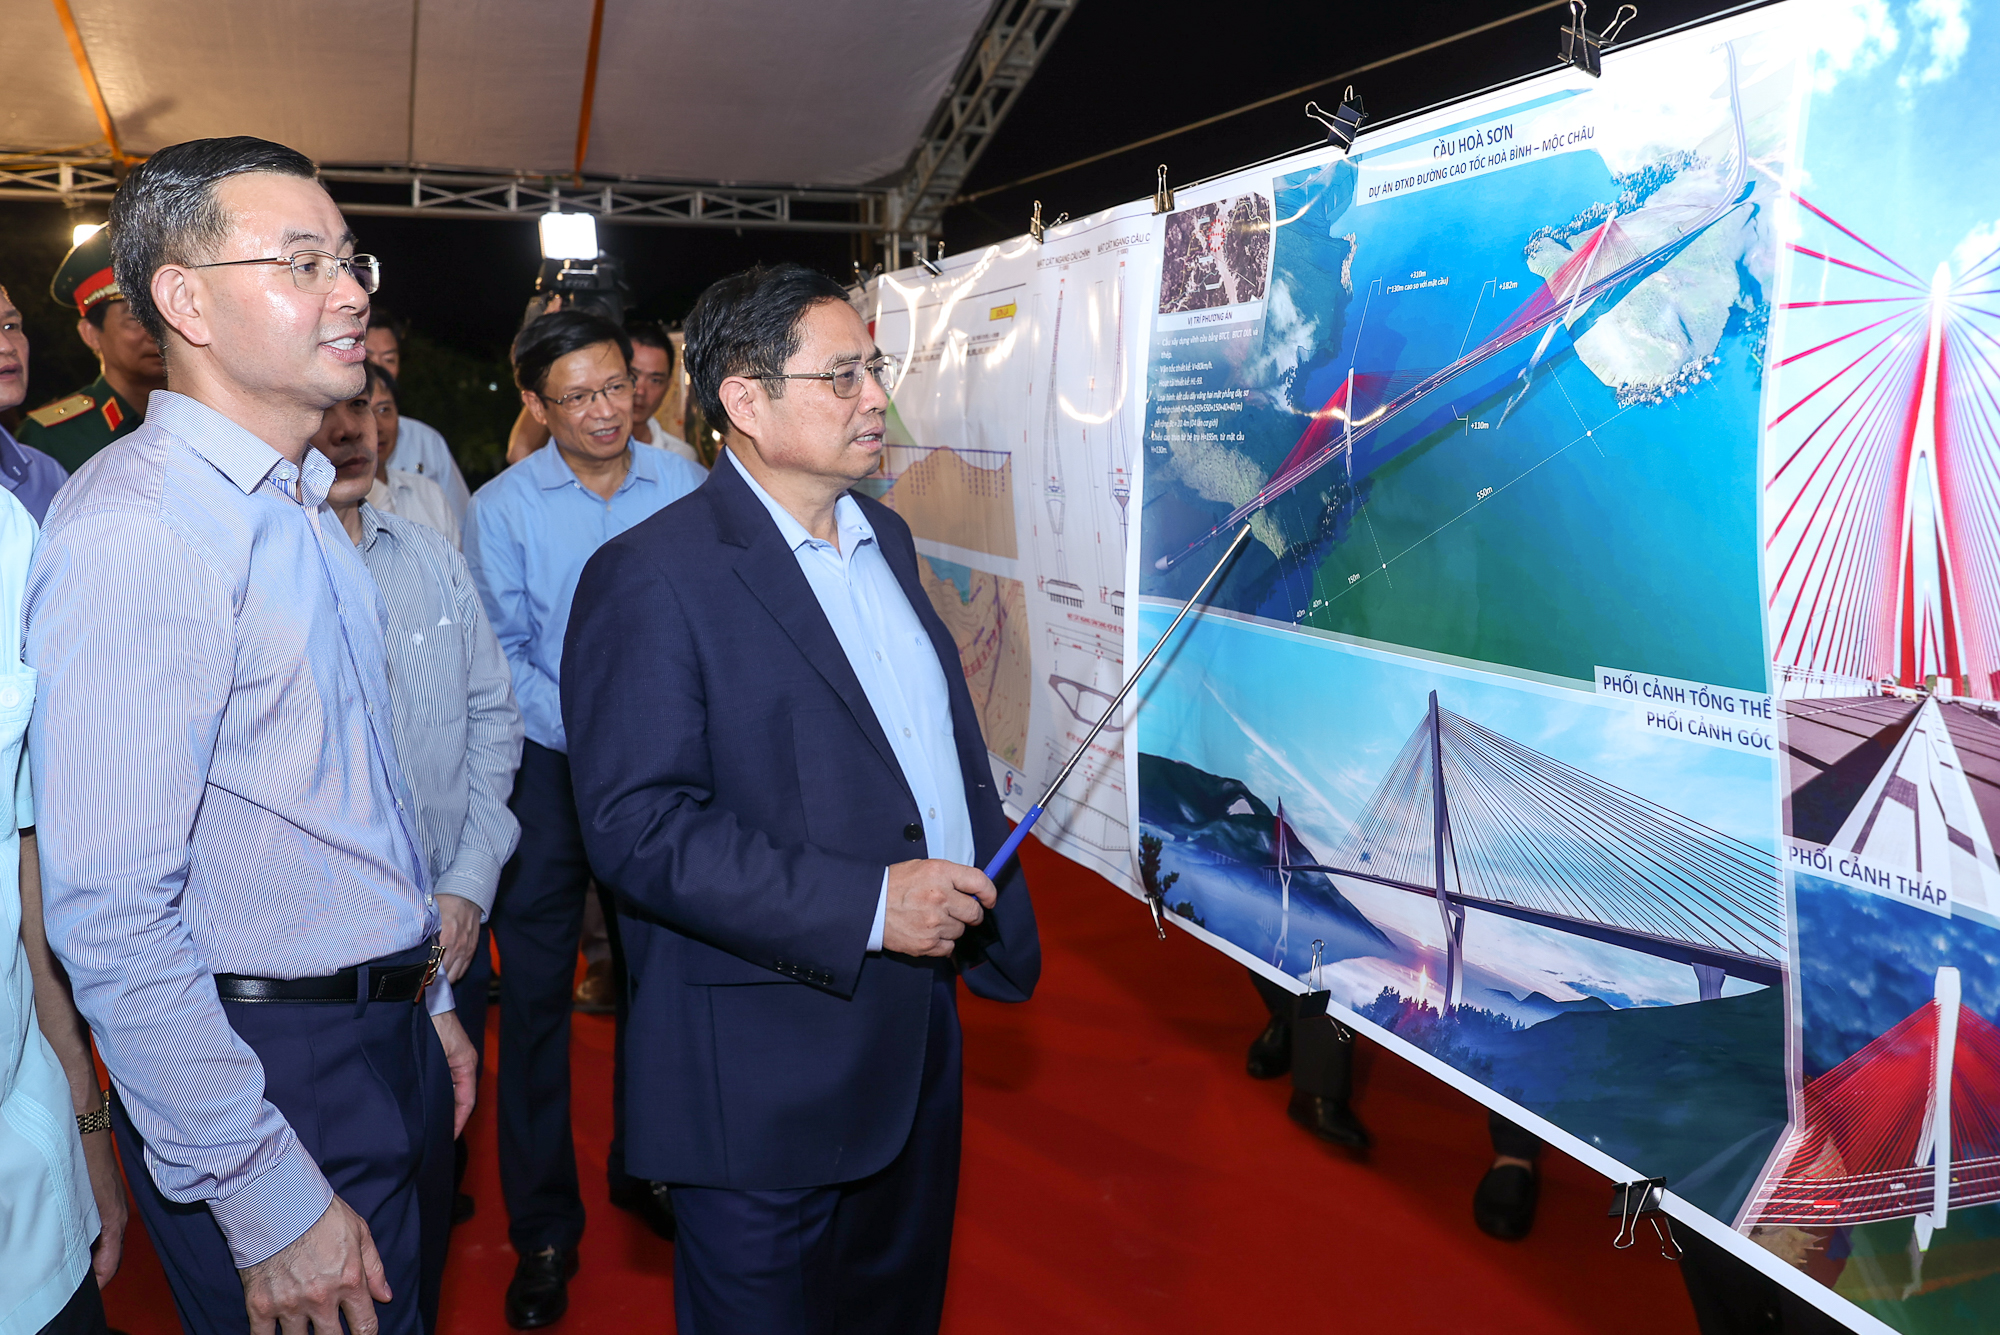 Thủ tướng thị sát dự án cao tốc nghìn tỷ Hòa Bình-Mộc Châu, xây dựng cầu Hoà Sơn thành điểm nhấn trên sông Đà - Ảnh 1.